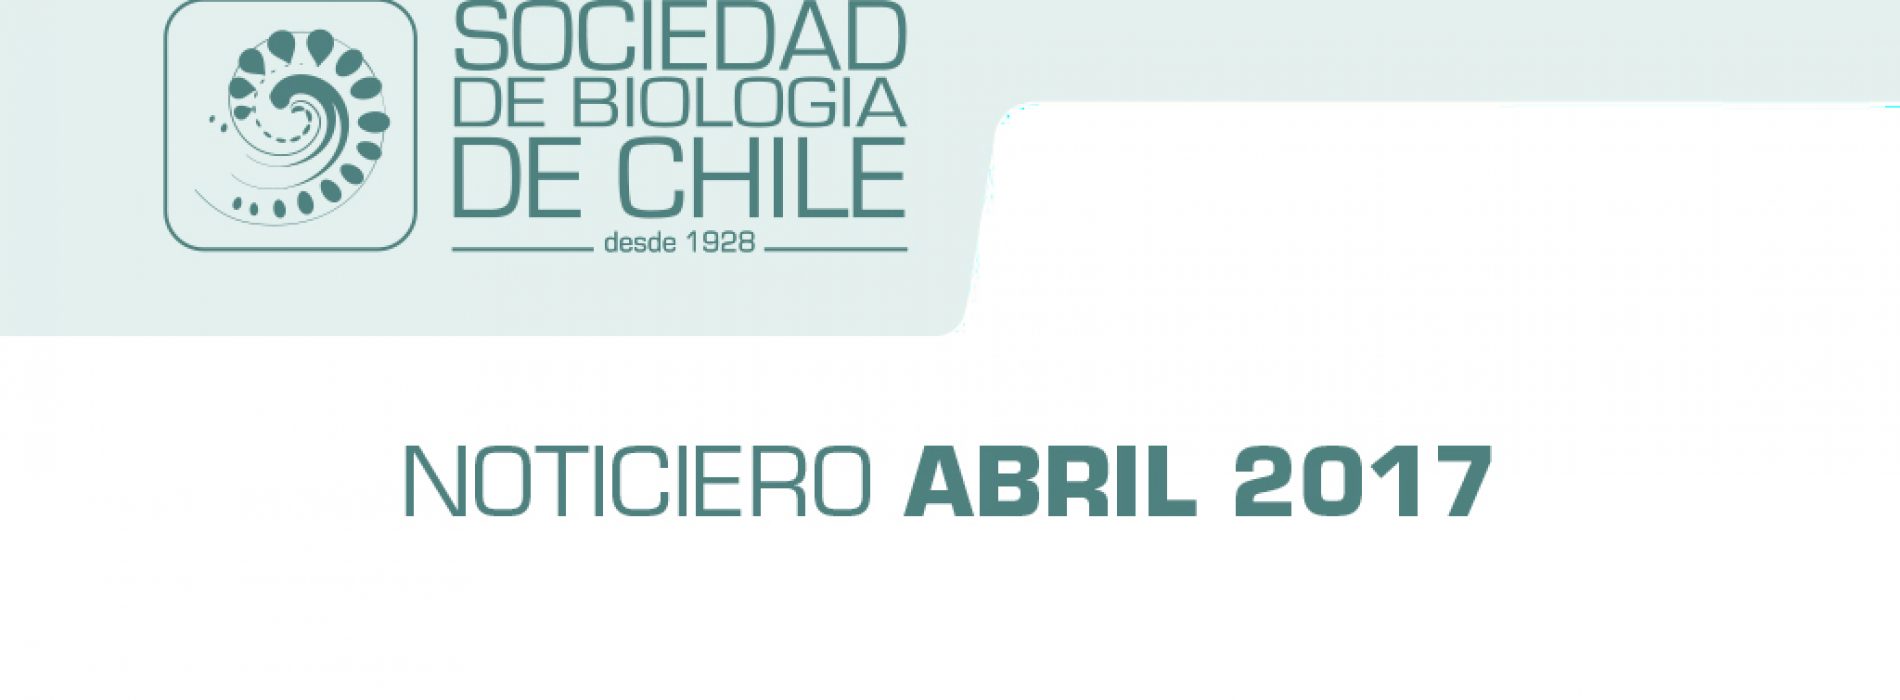 Noticiero Abril 2017. Sociedad de Biología de Chile